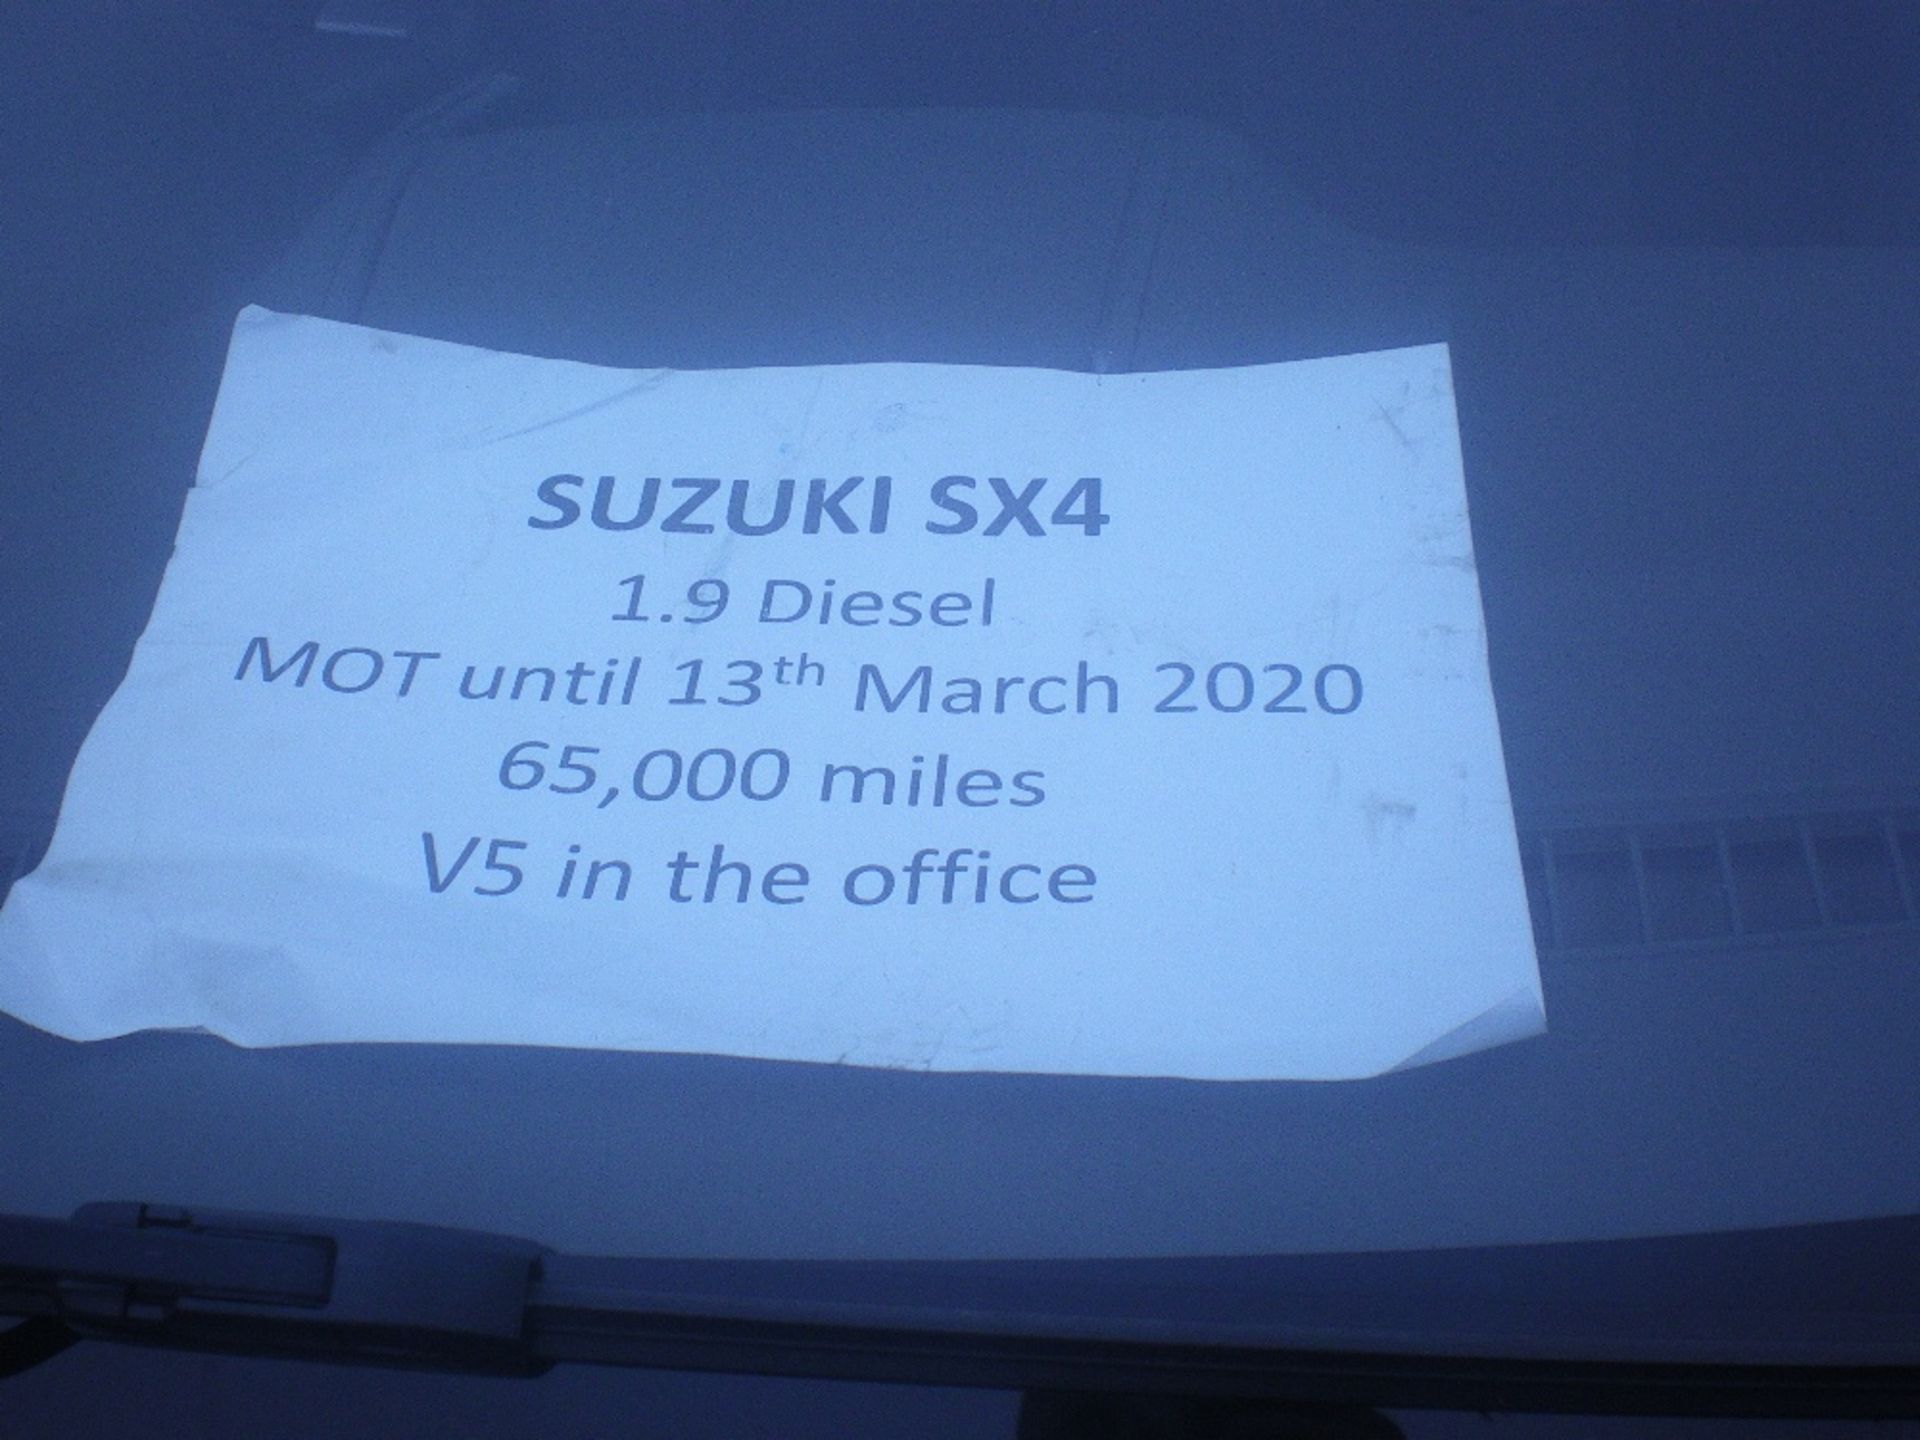 SUZUKI SX4 1.9 DIESEL CAR - Image 4 of 4